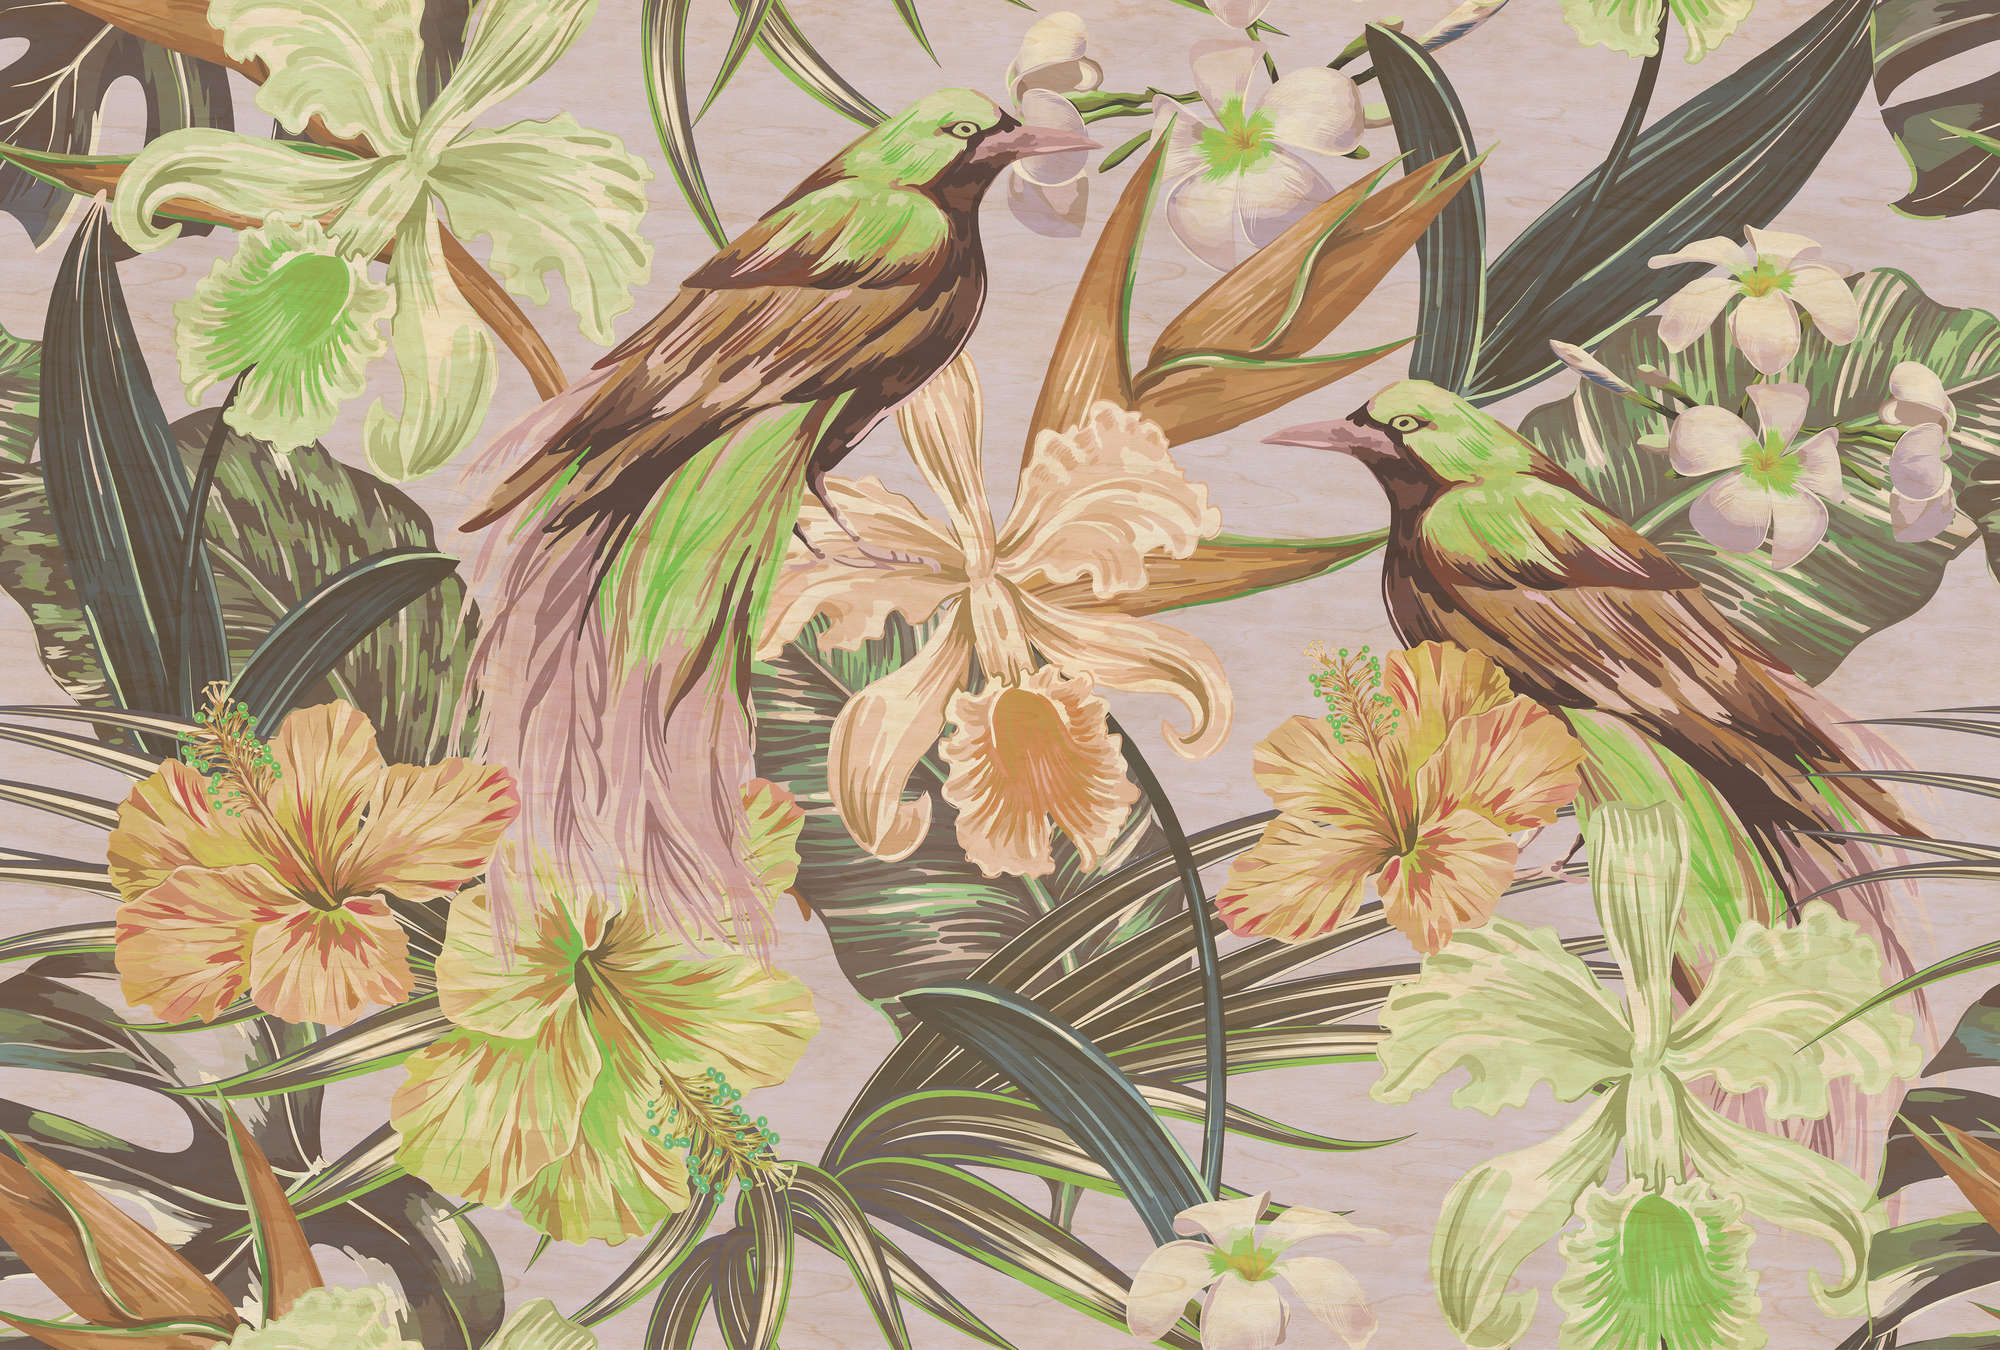             Exotische vogels 2 - Digital behang exotische vogels & planten- Kras textuur - Beige, Groen | Matte gladde fleece
        